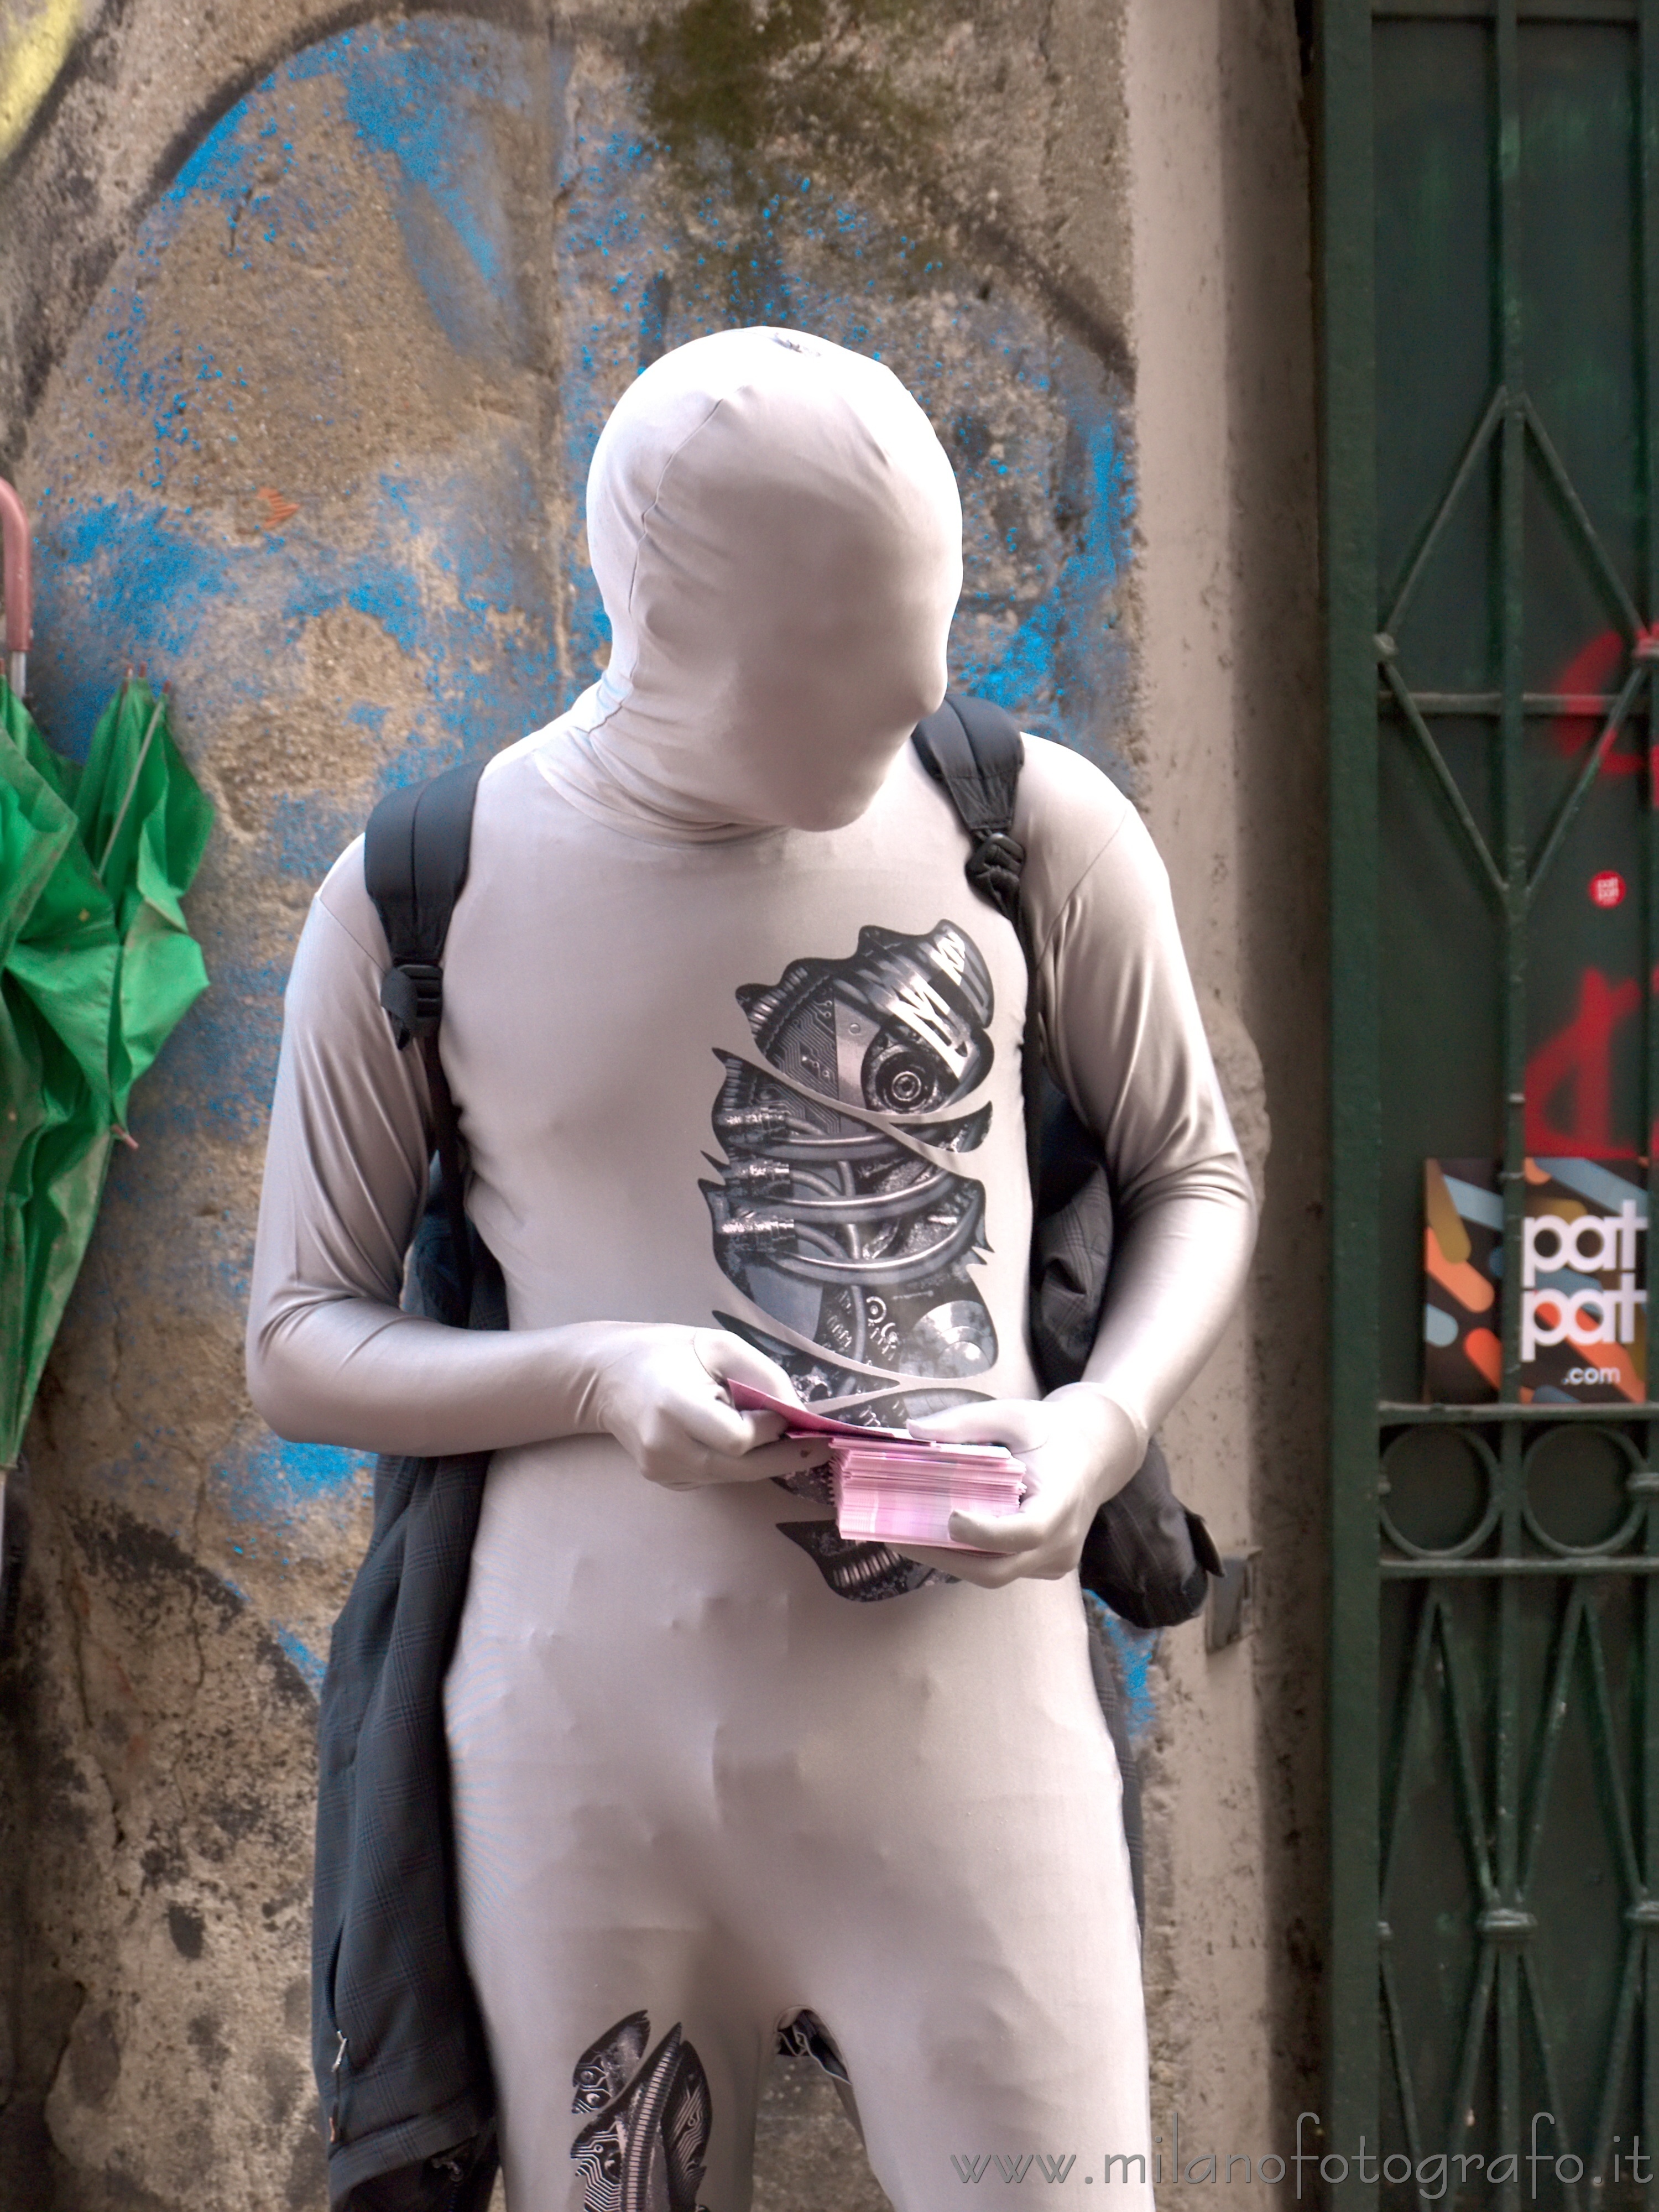 Milano: Uomo pubblicità in argento al Fuorisalone 2013 - Milano